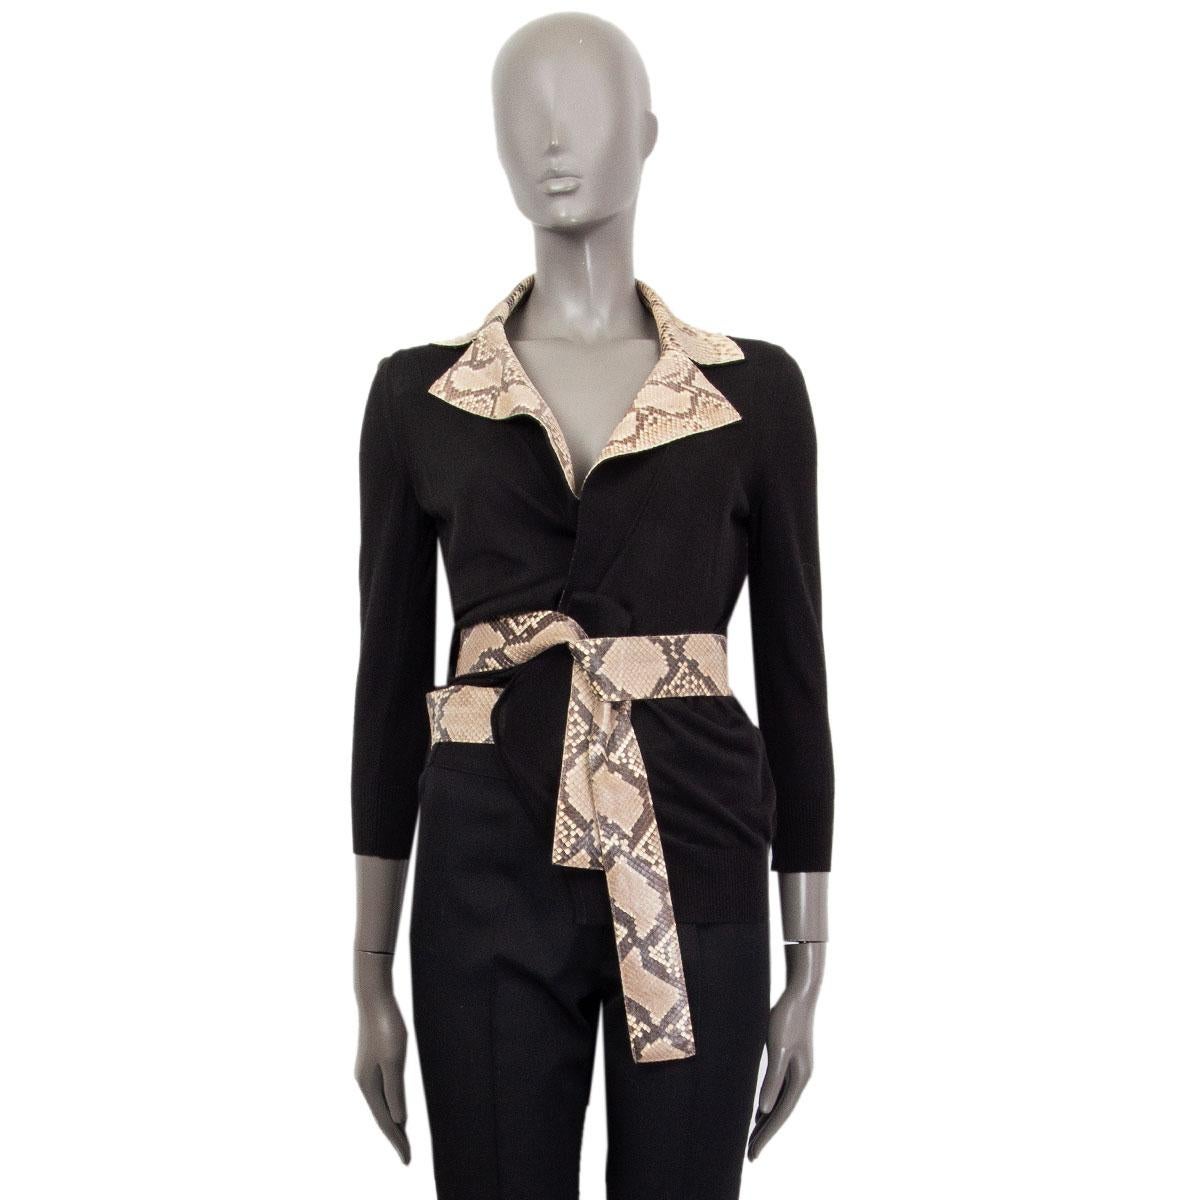 100% authentische Dolce & Gabbana Wickeljacke aus schwarzer Wolle (vermutlich, da das Inhaltsetikett fehlt) mit Python-Gürtel und Kragen mit Kerbe. Unbeschriftet. Wurde getragen und ist in ausgezeichnetem Zustand.

Messungen
Tag